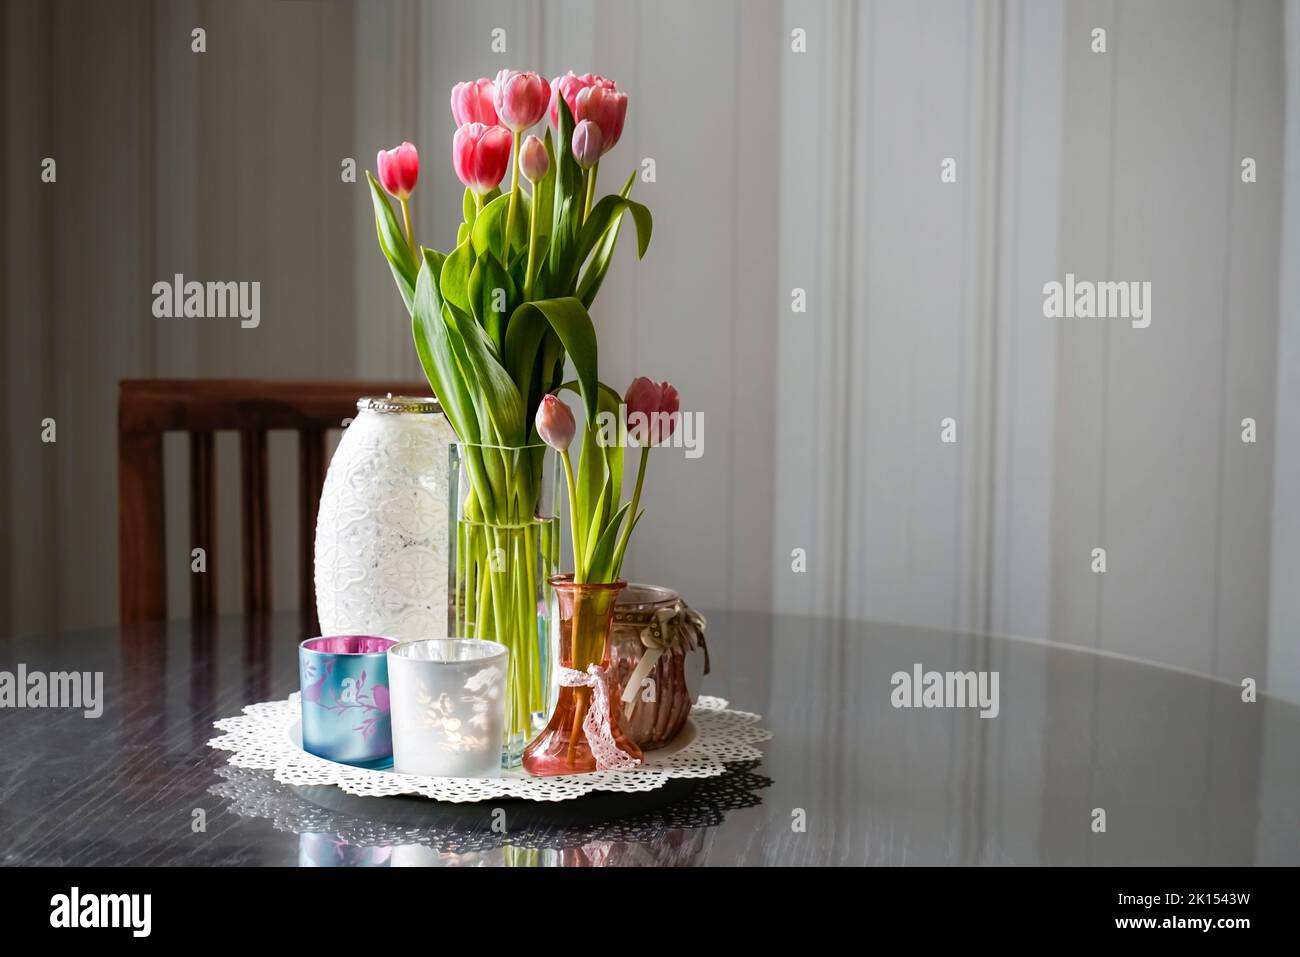 Langstielige rosa Tulpen mit mehreren Gläsern auf einem runden Holztisch. Im Hintergrund befindet sich ein Stuhl und eine gestreifte Tapete. Antik-romantischer Look. Stockfoto